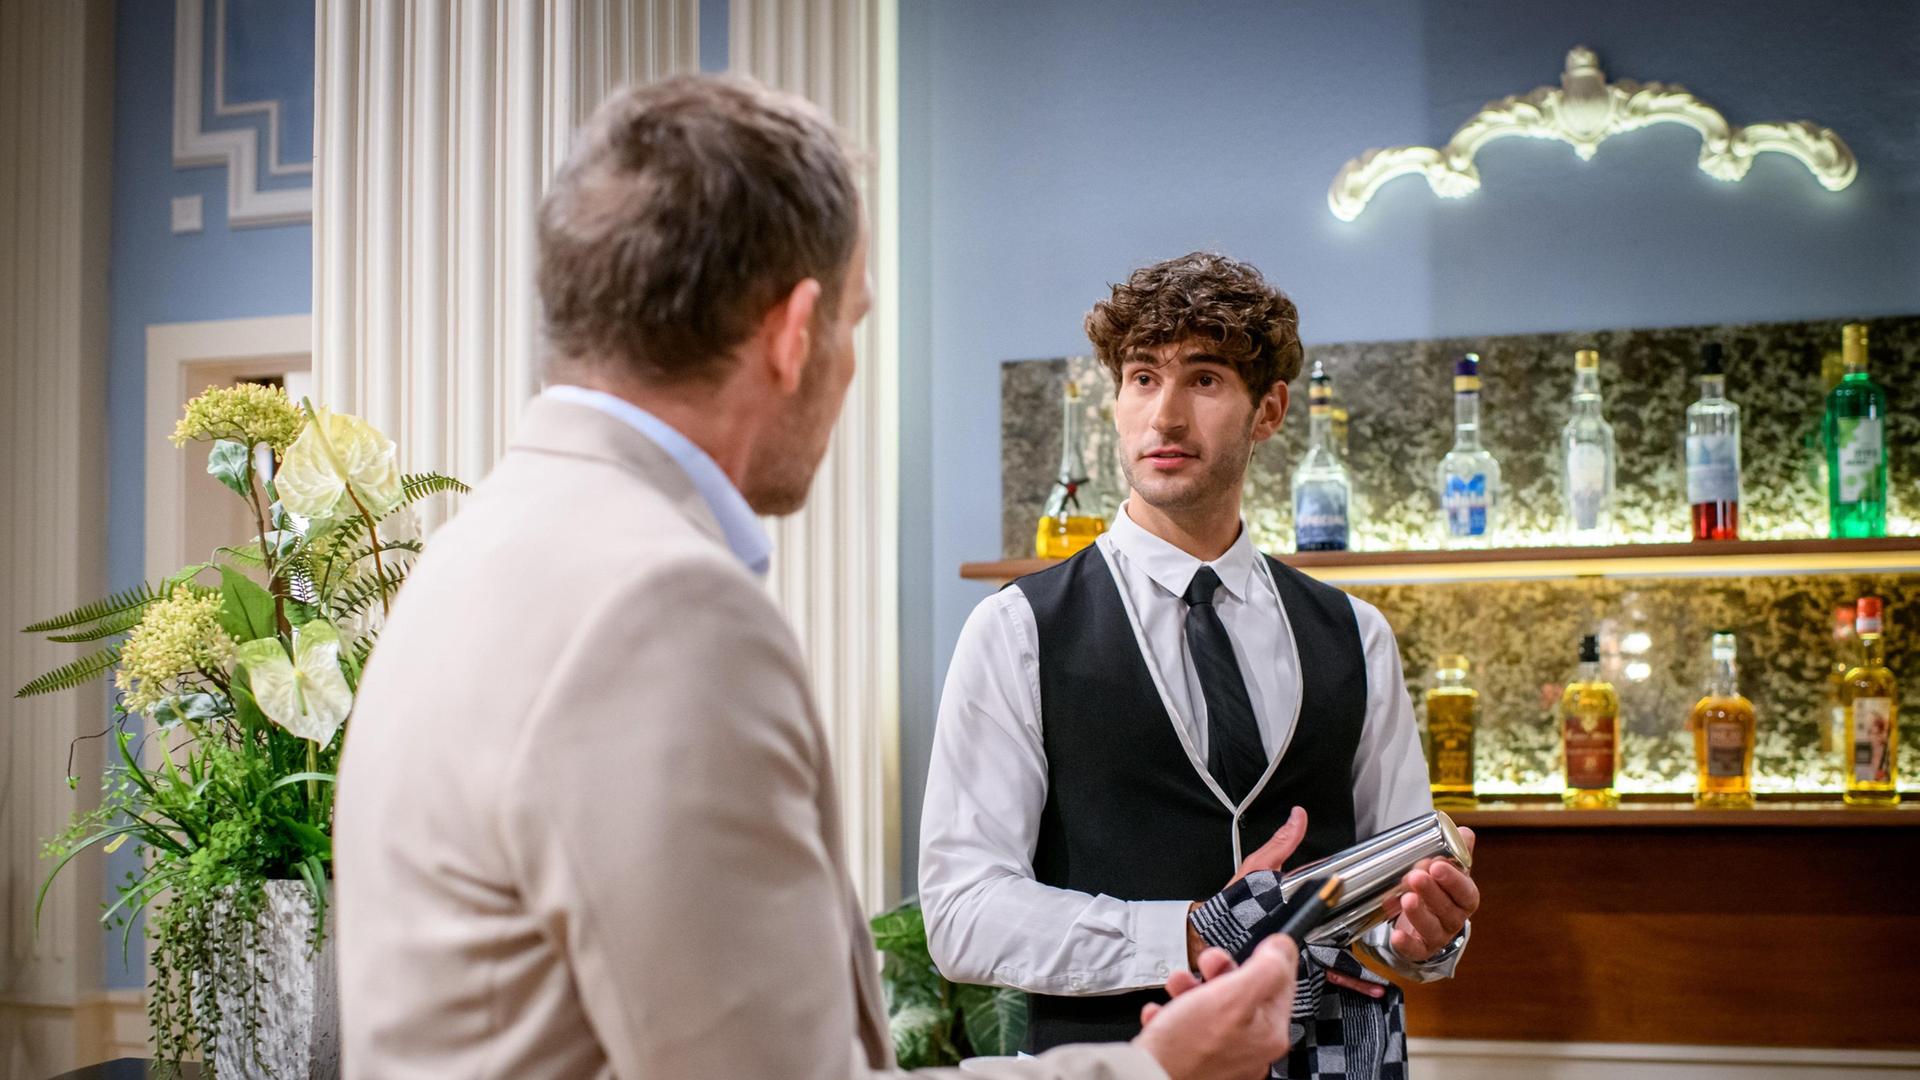 Noah (Christopher Jan Busse) überzeugt Markus (Timo Ben Schöfer), ein verlockendes Angebot anzunehmen.